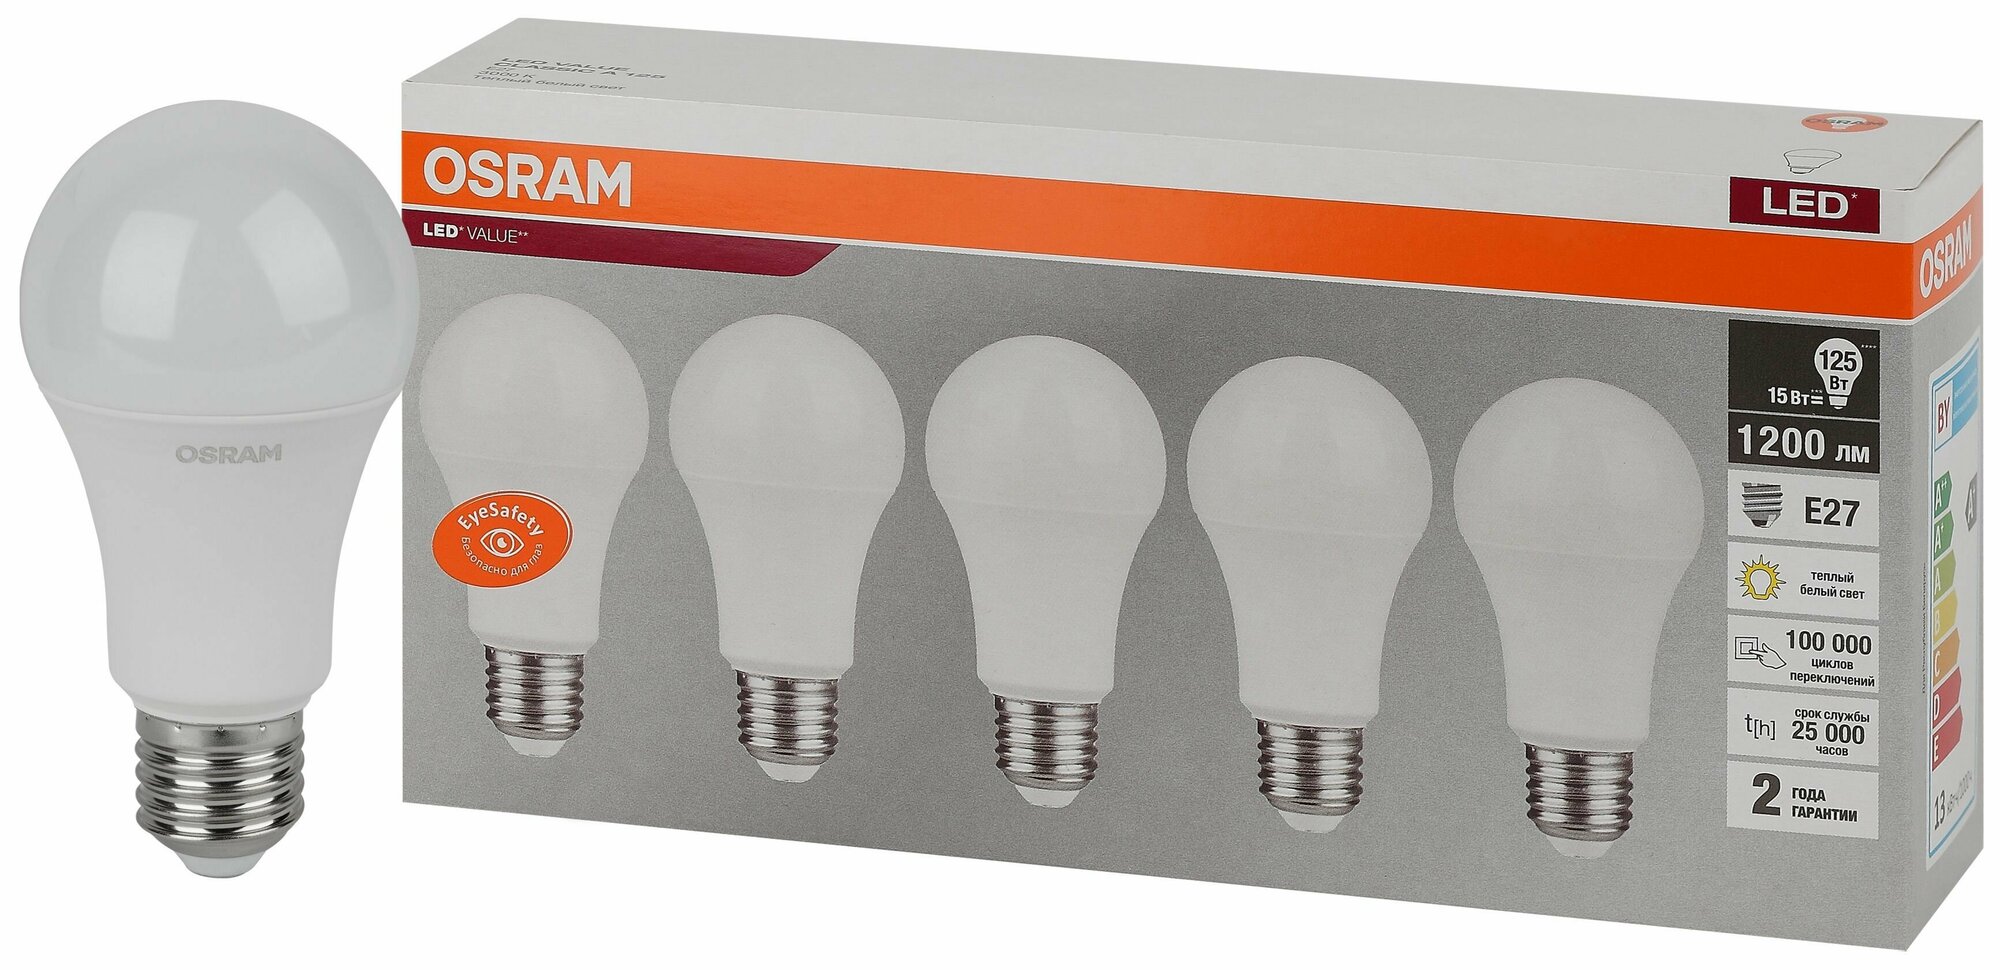 Лампочка светодиодная E27 OSRAM LED Value A, 1200лм, 13 Вт, 4000К (нейтральный белый свет), упаковка 5 шт.